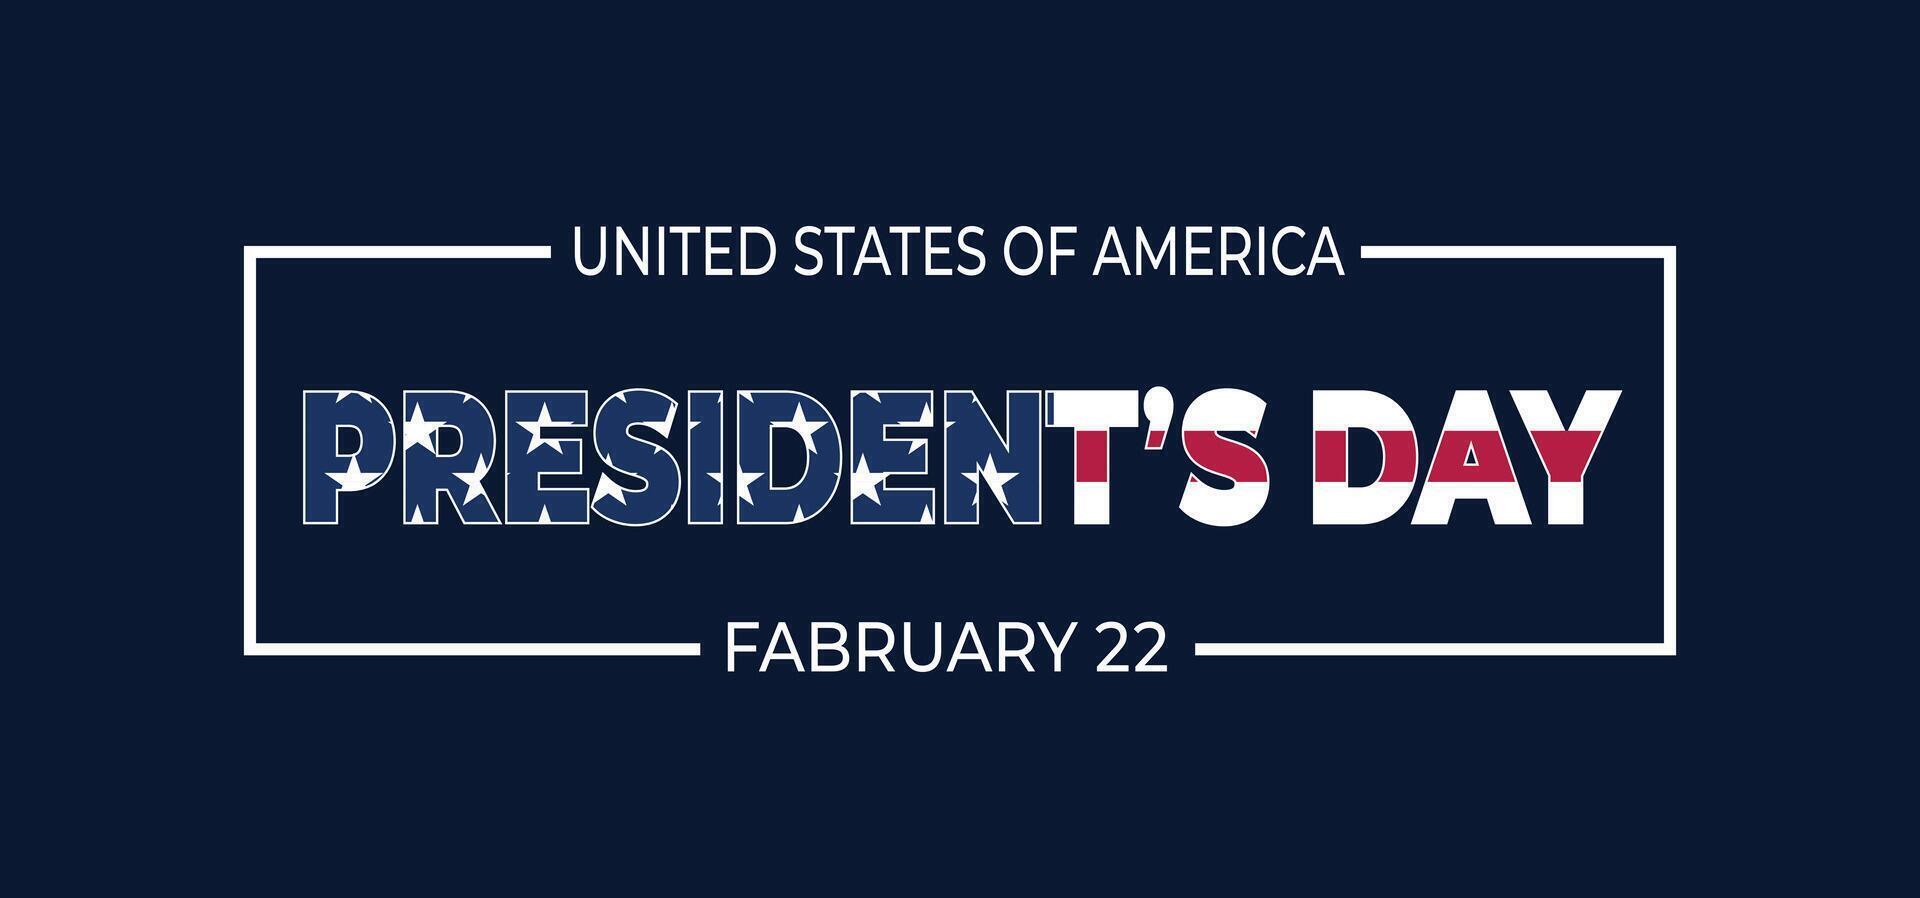 presidentens dag bakgrund design. baner, affisch, hälsning kort vektor illustration